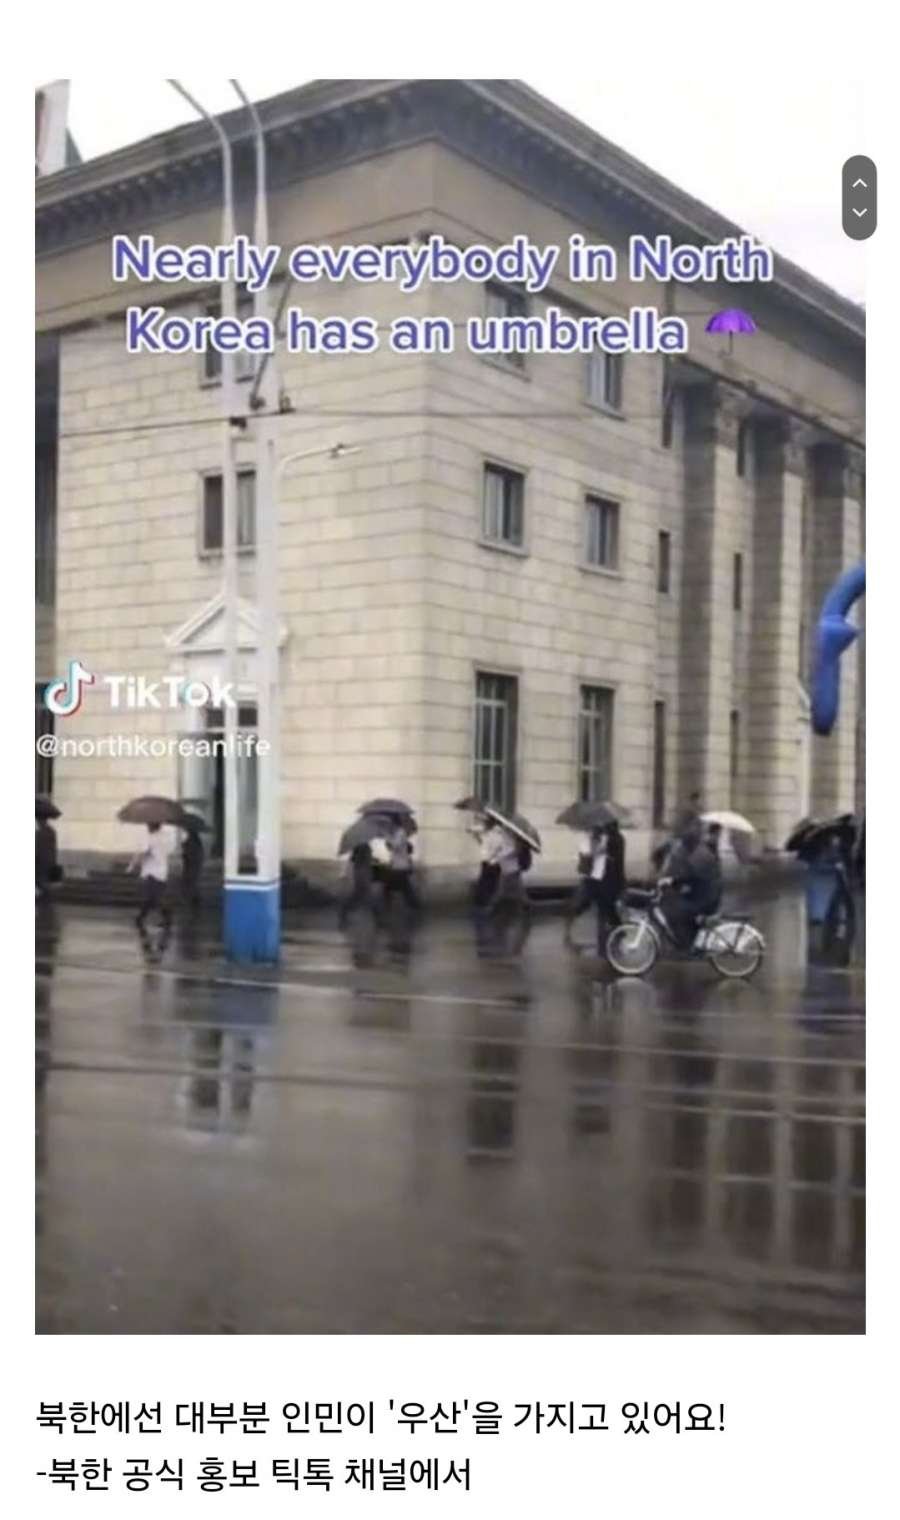 북한이 틱톡 계정으로 자랑하는 것.jpg